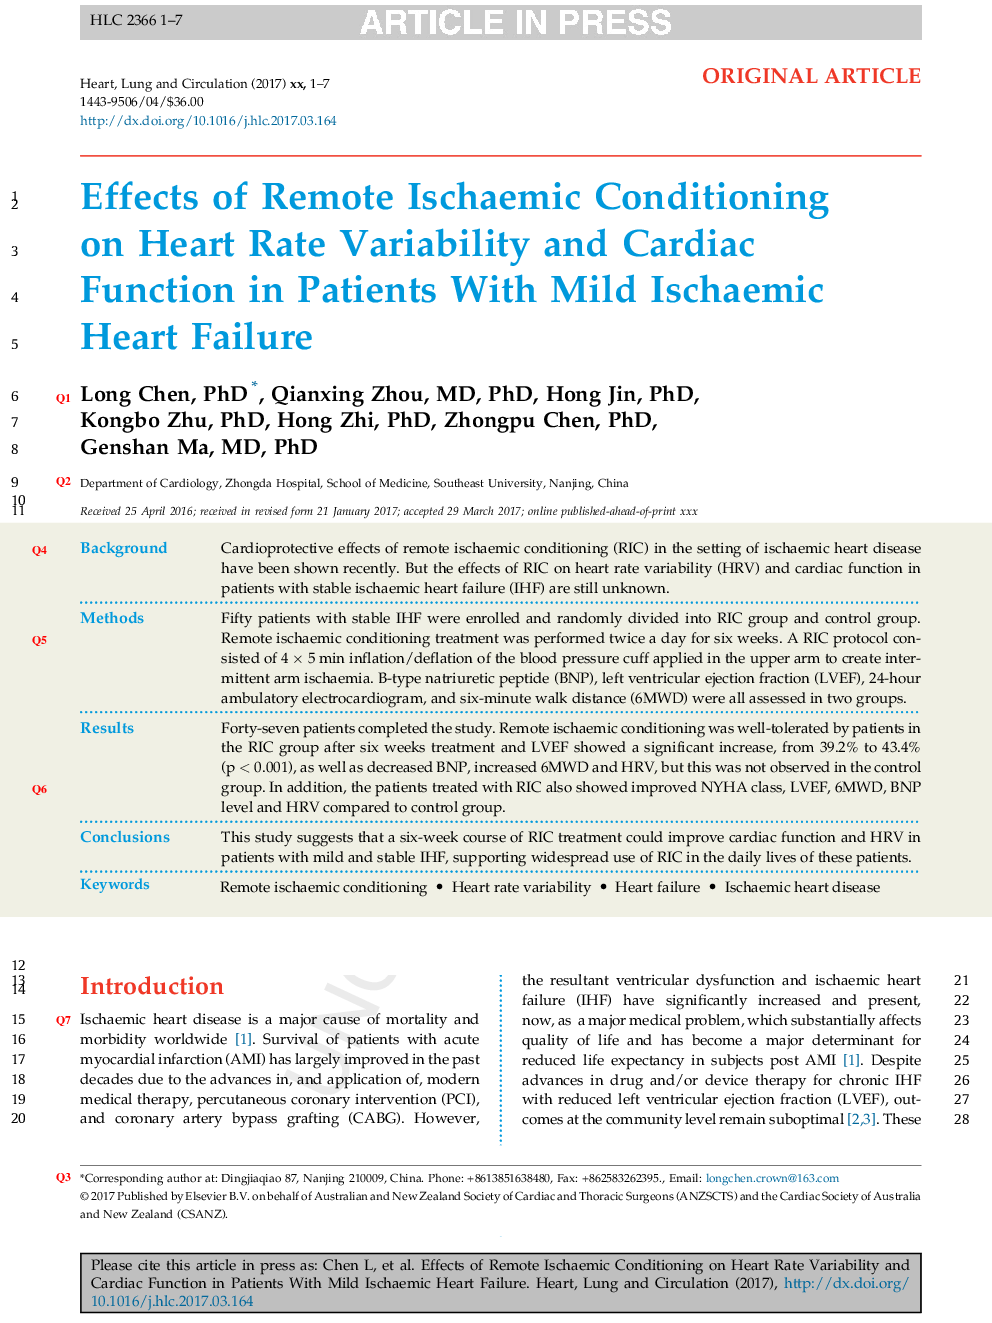 اثرات تهویه ای ایسکمیک راه دور بر تغییرات ضربان قلب و عملکرد قلبی در بیماران مبتلا به نارسایی قلبی ایسکمیک 